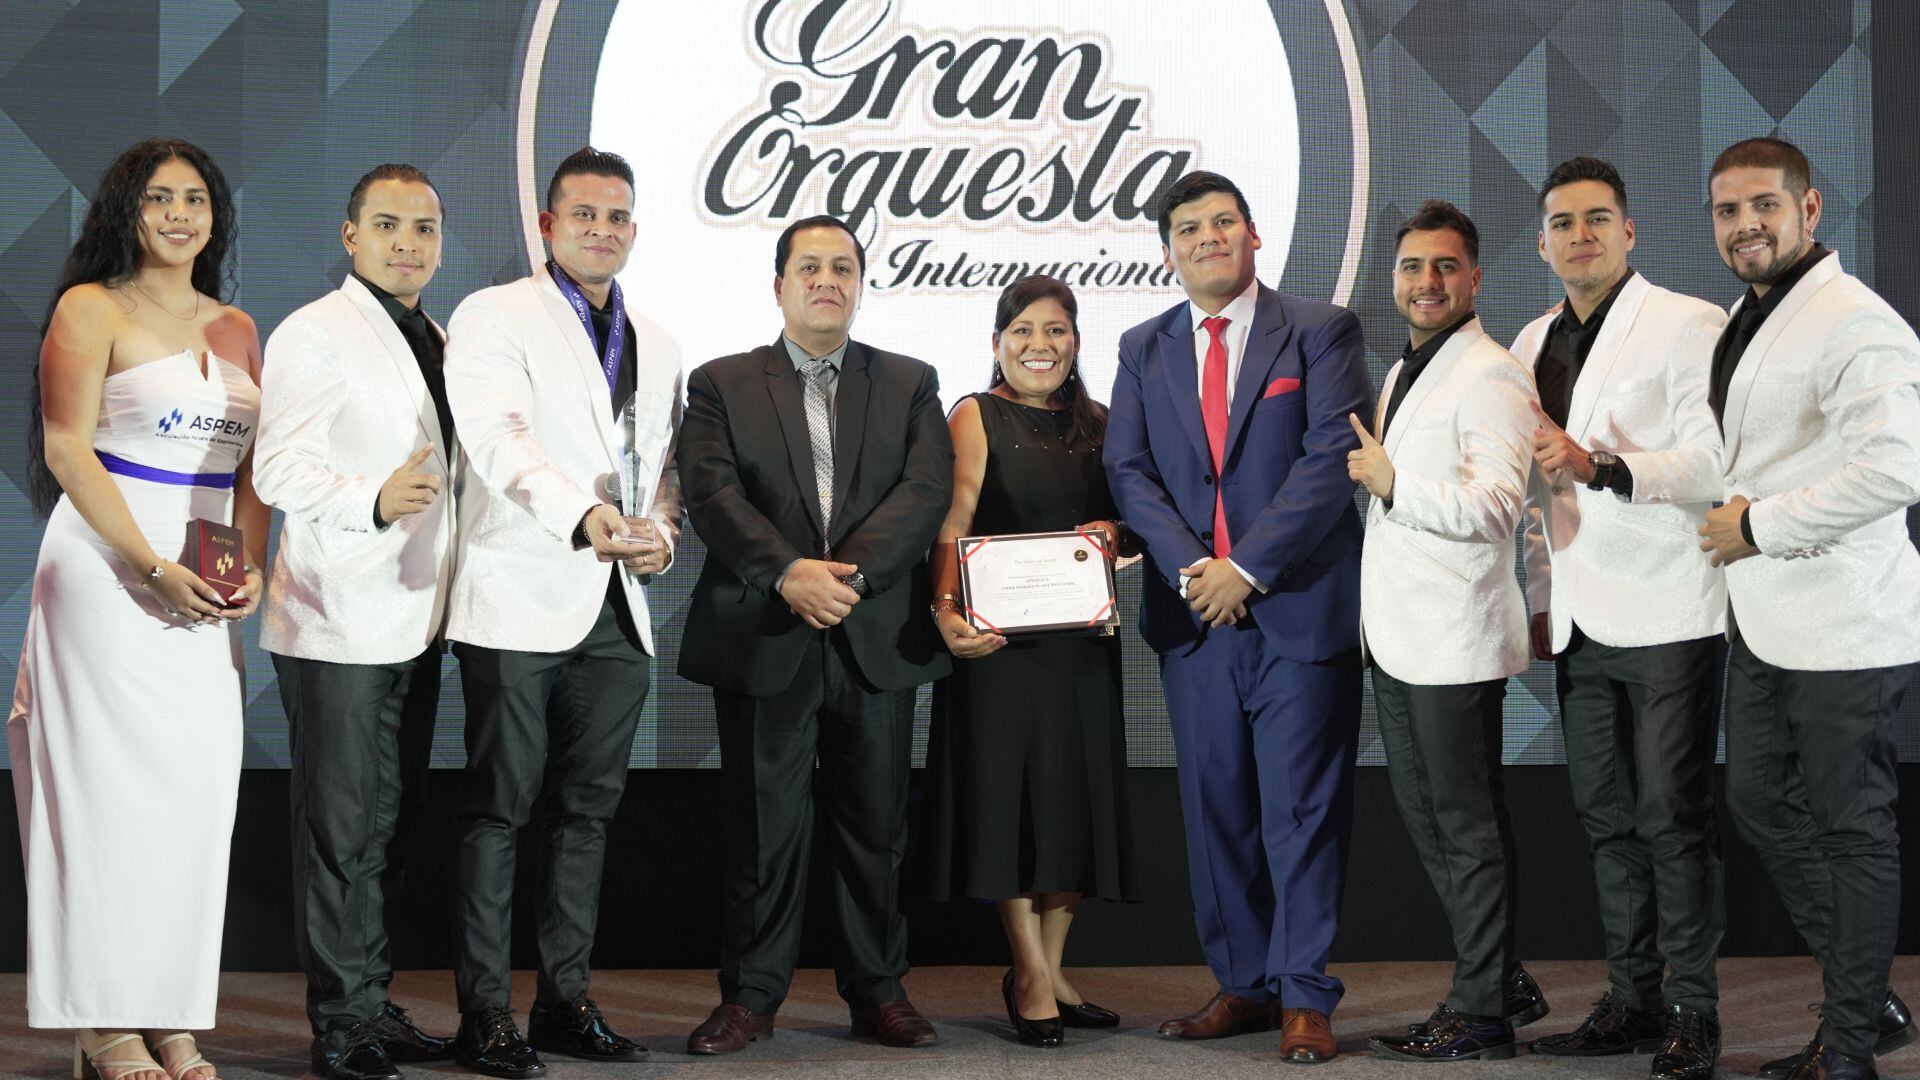 Gran Orquesta Internacional también fue reconocido por la Asociación Peruana de Empresarios.